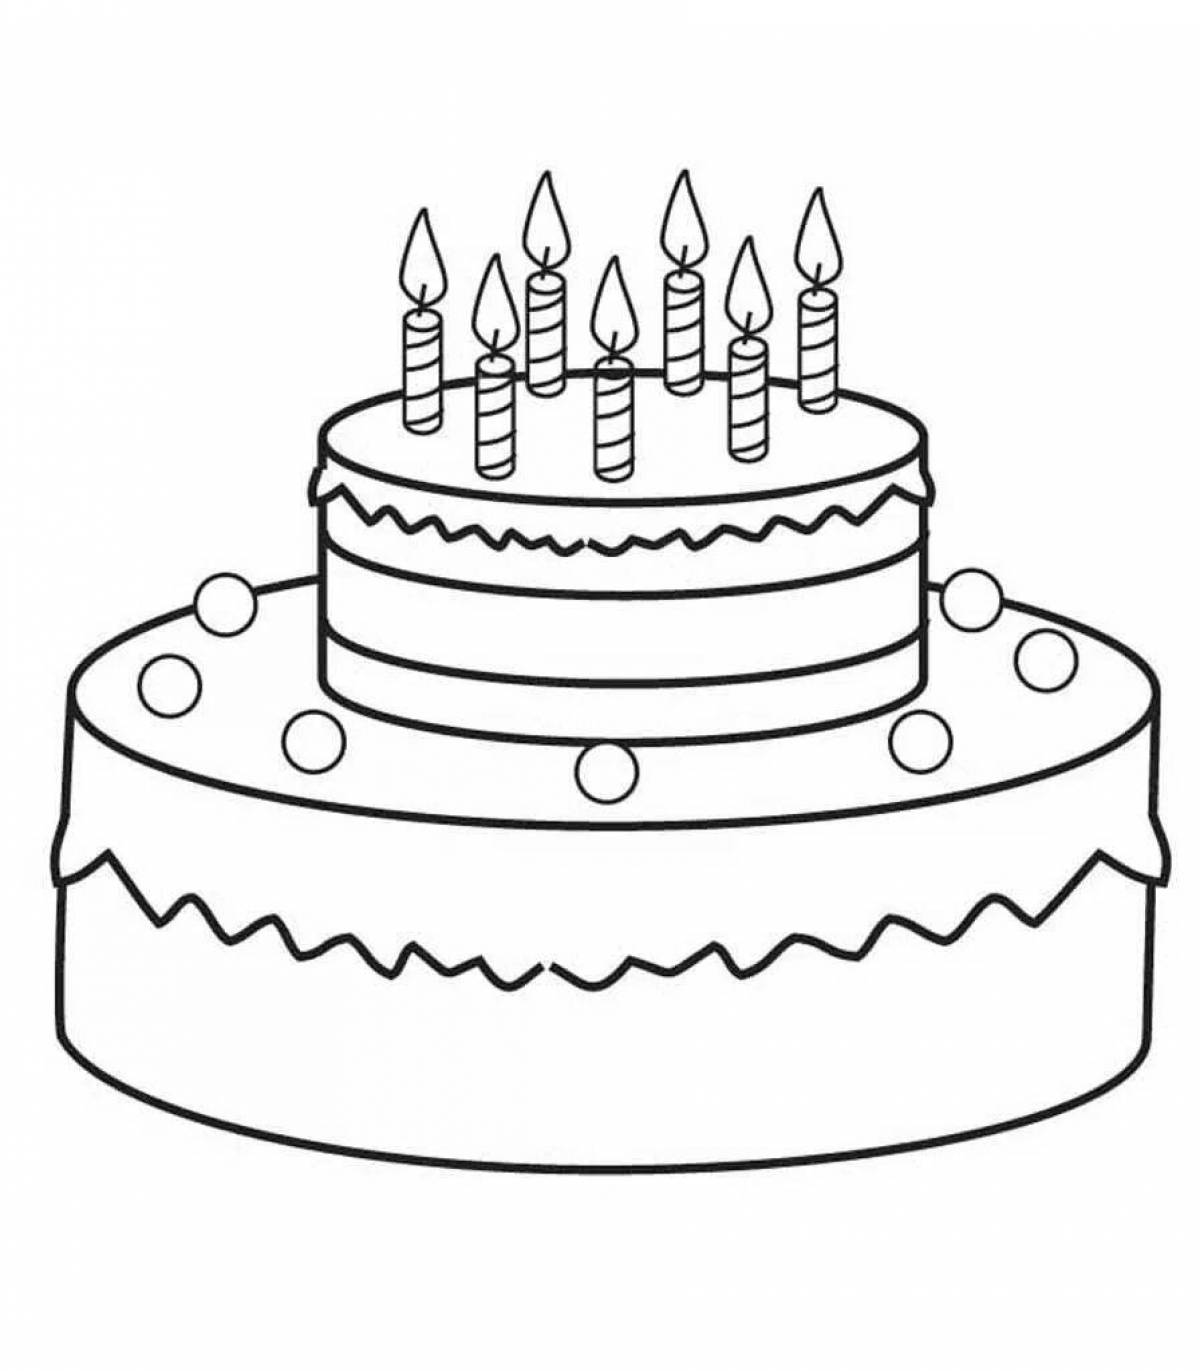 Распечатать картинку на торт. Раскраска торт. Раскраска торт на день рождения. Торт раскраска для детей. Рисунок торта на день рождения.